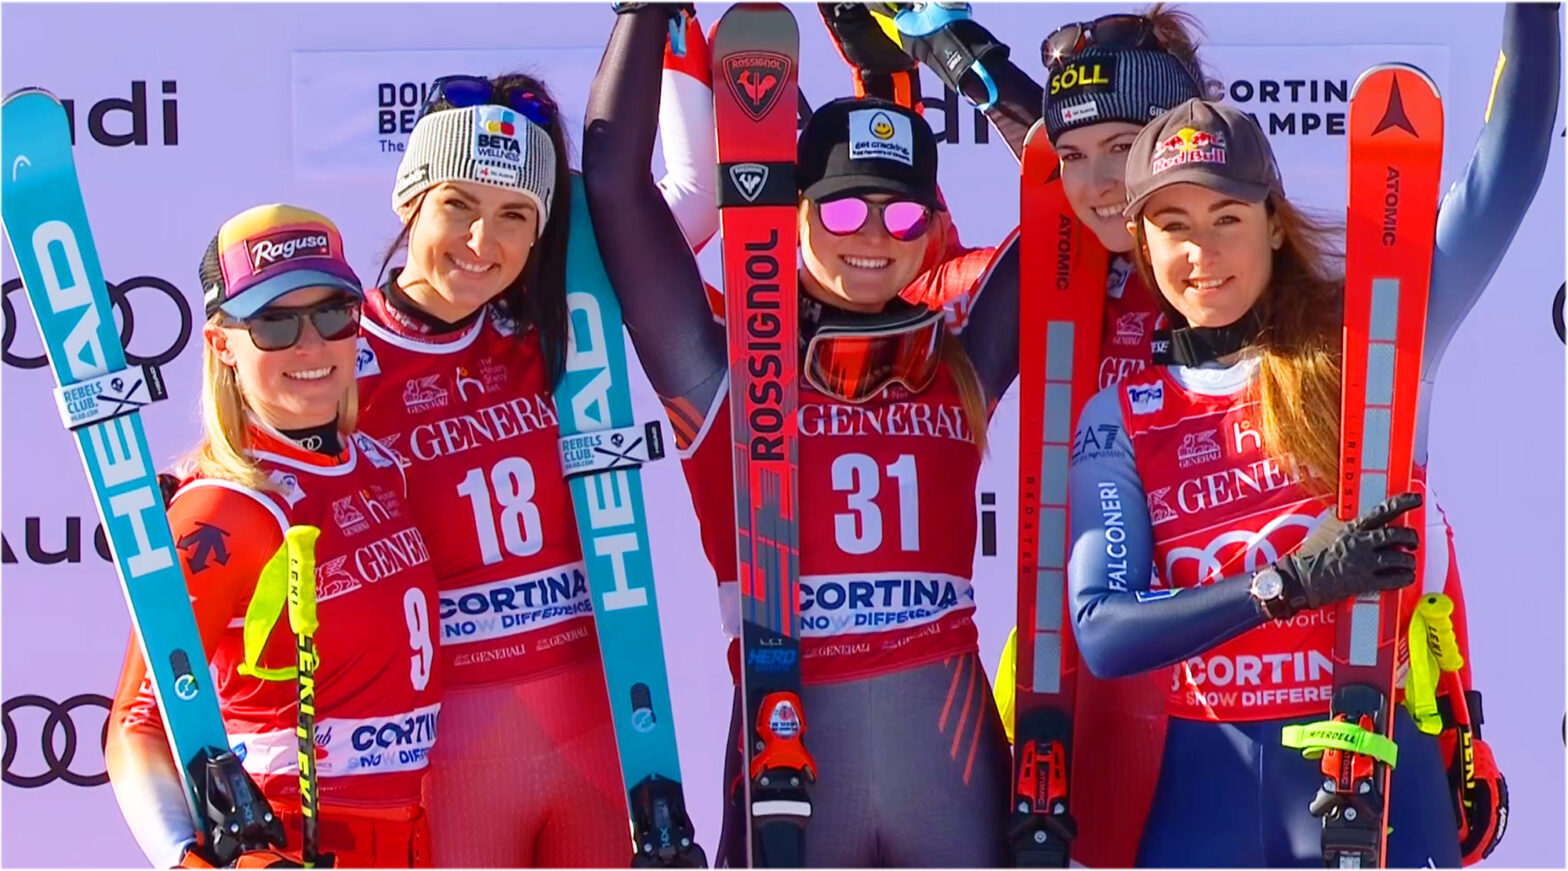 LIVE: 2. Ski Weltcup Abfahrt der Damen in Cortina d‘Ampezzo am Samstag 2024 - Vorbericht, Startliste und Liveticker - Startzeit 10.30 Uhr